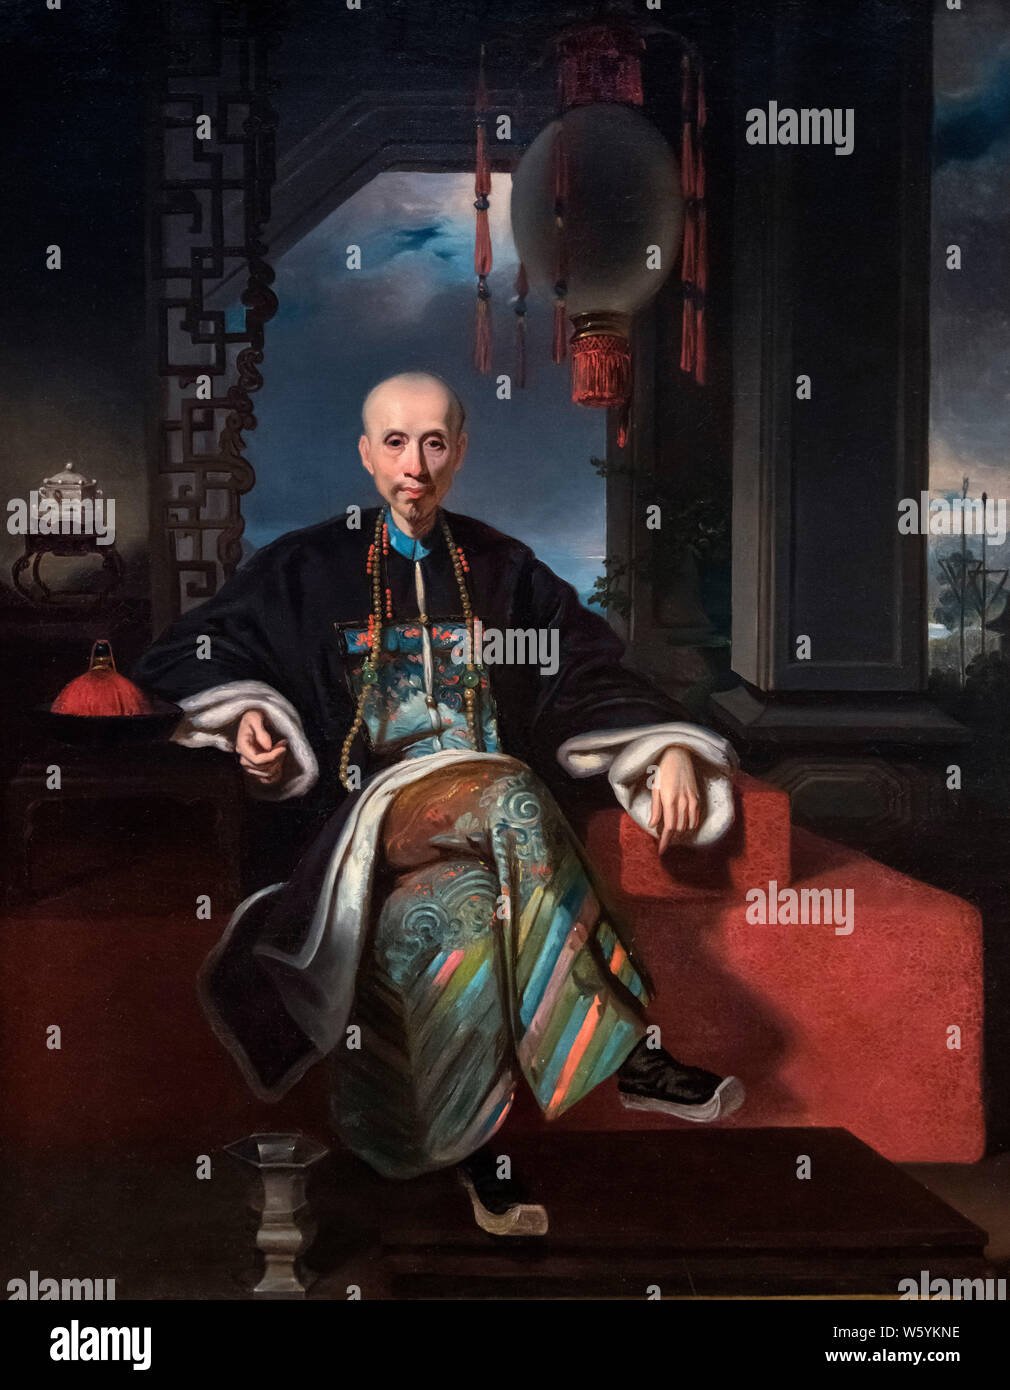 Ritratto di Howqua (Wu Bingjian - 1769-1843) da Kwan Kiu Cheong, olio su tela, inizi del XIX secolo. Howqua era il più importante della Hong mercanti in tredici stabilimenti, capo dell'E-wo hong e leader del Cantone Cohong. Egli era una volta l uomo più ricco del mondo. Foto Stock